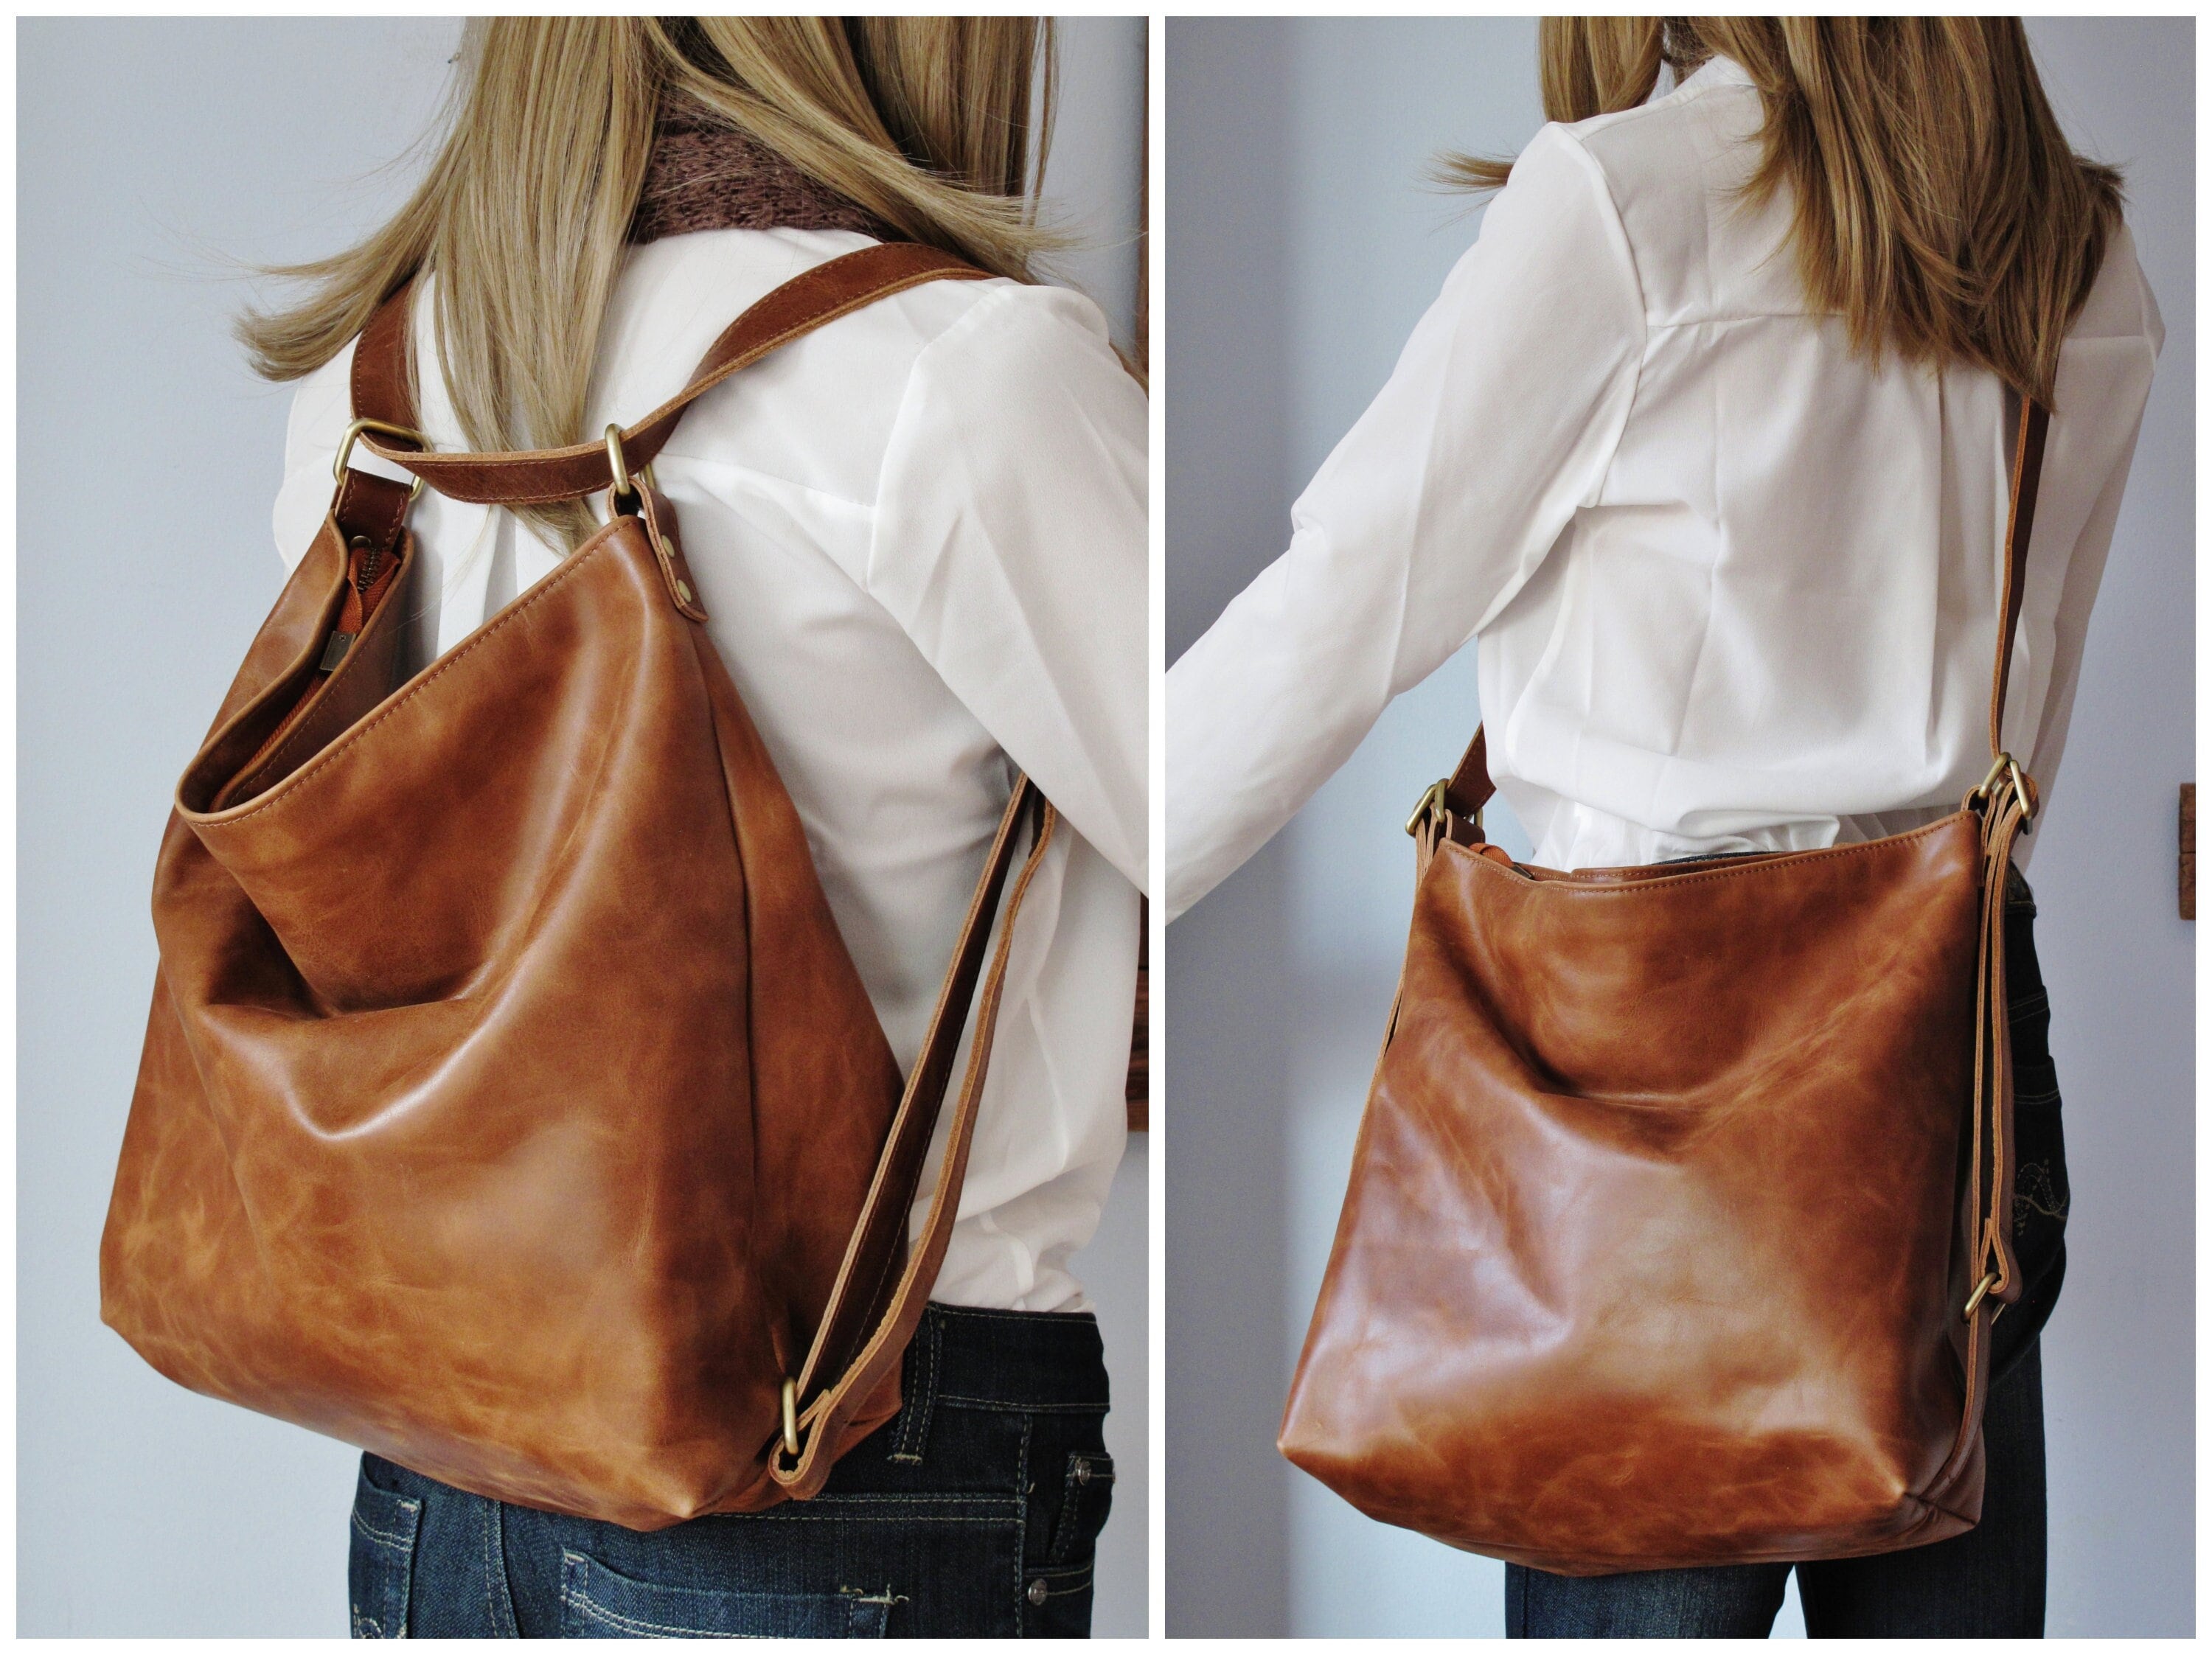 Girls sling bag femme side bags for women crossbody bag sac